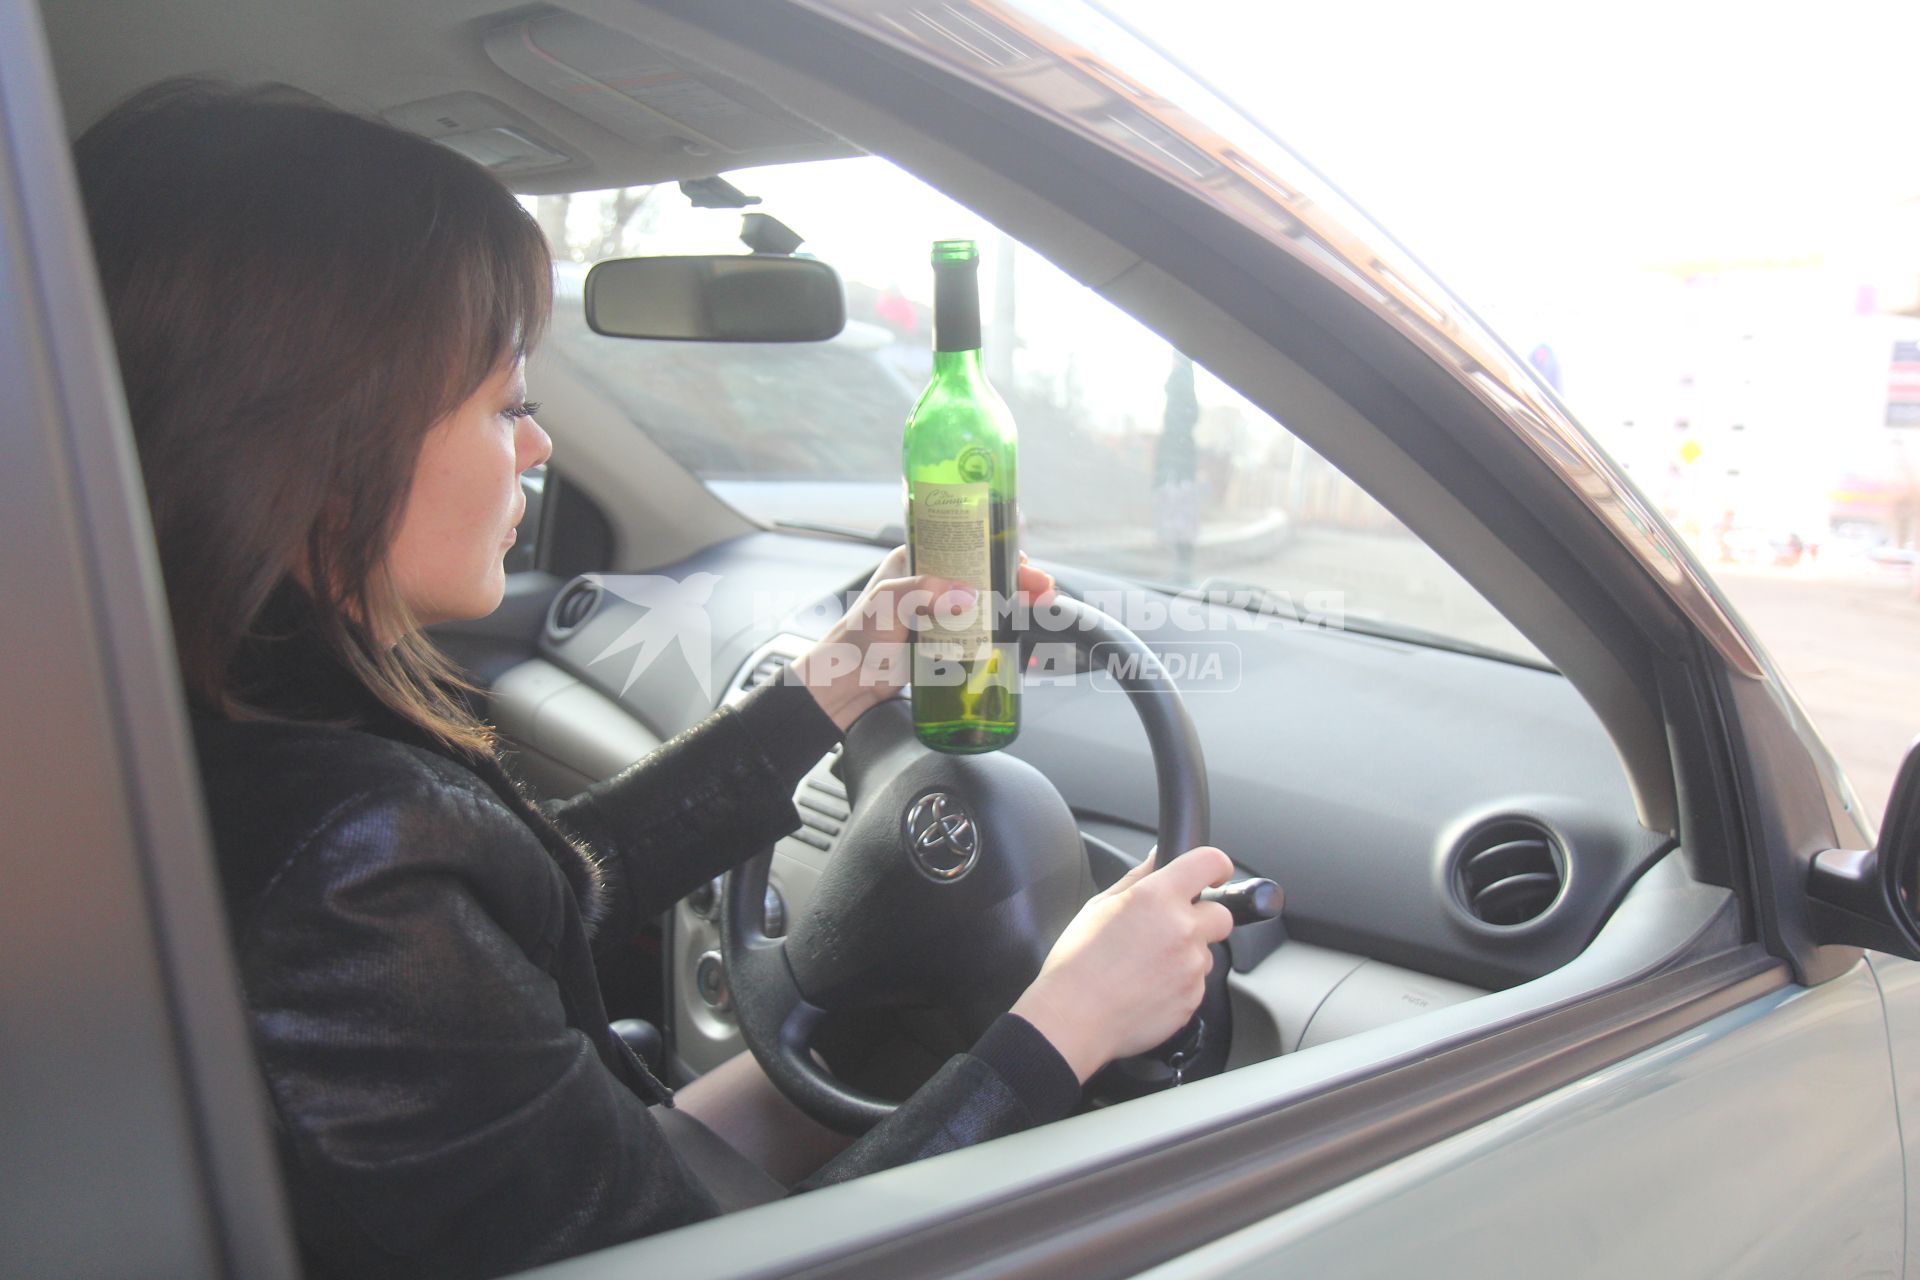 Иркутск. Девушка за рулем автомобиля пьет вино.